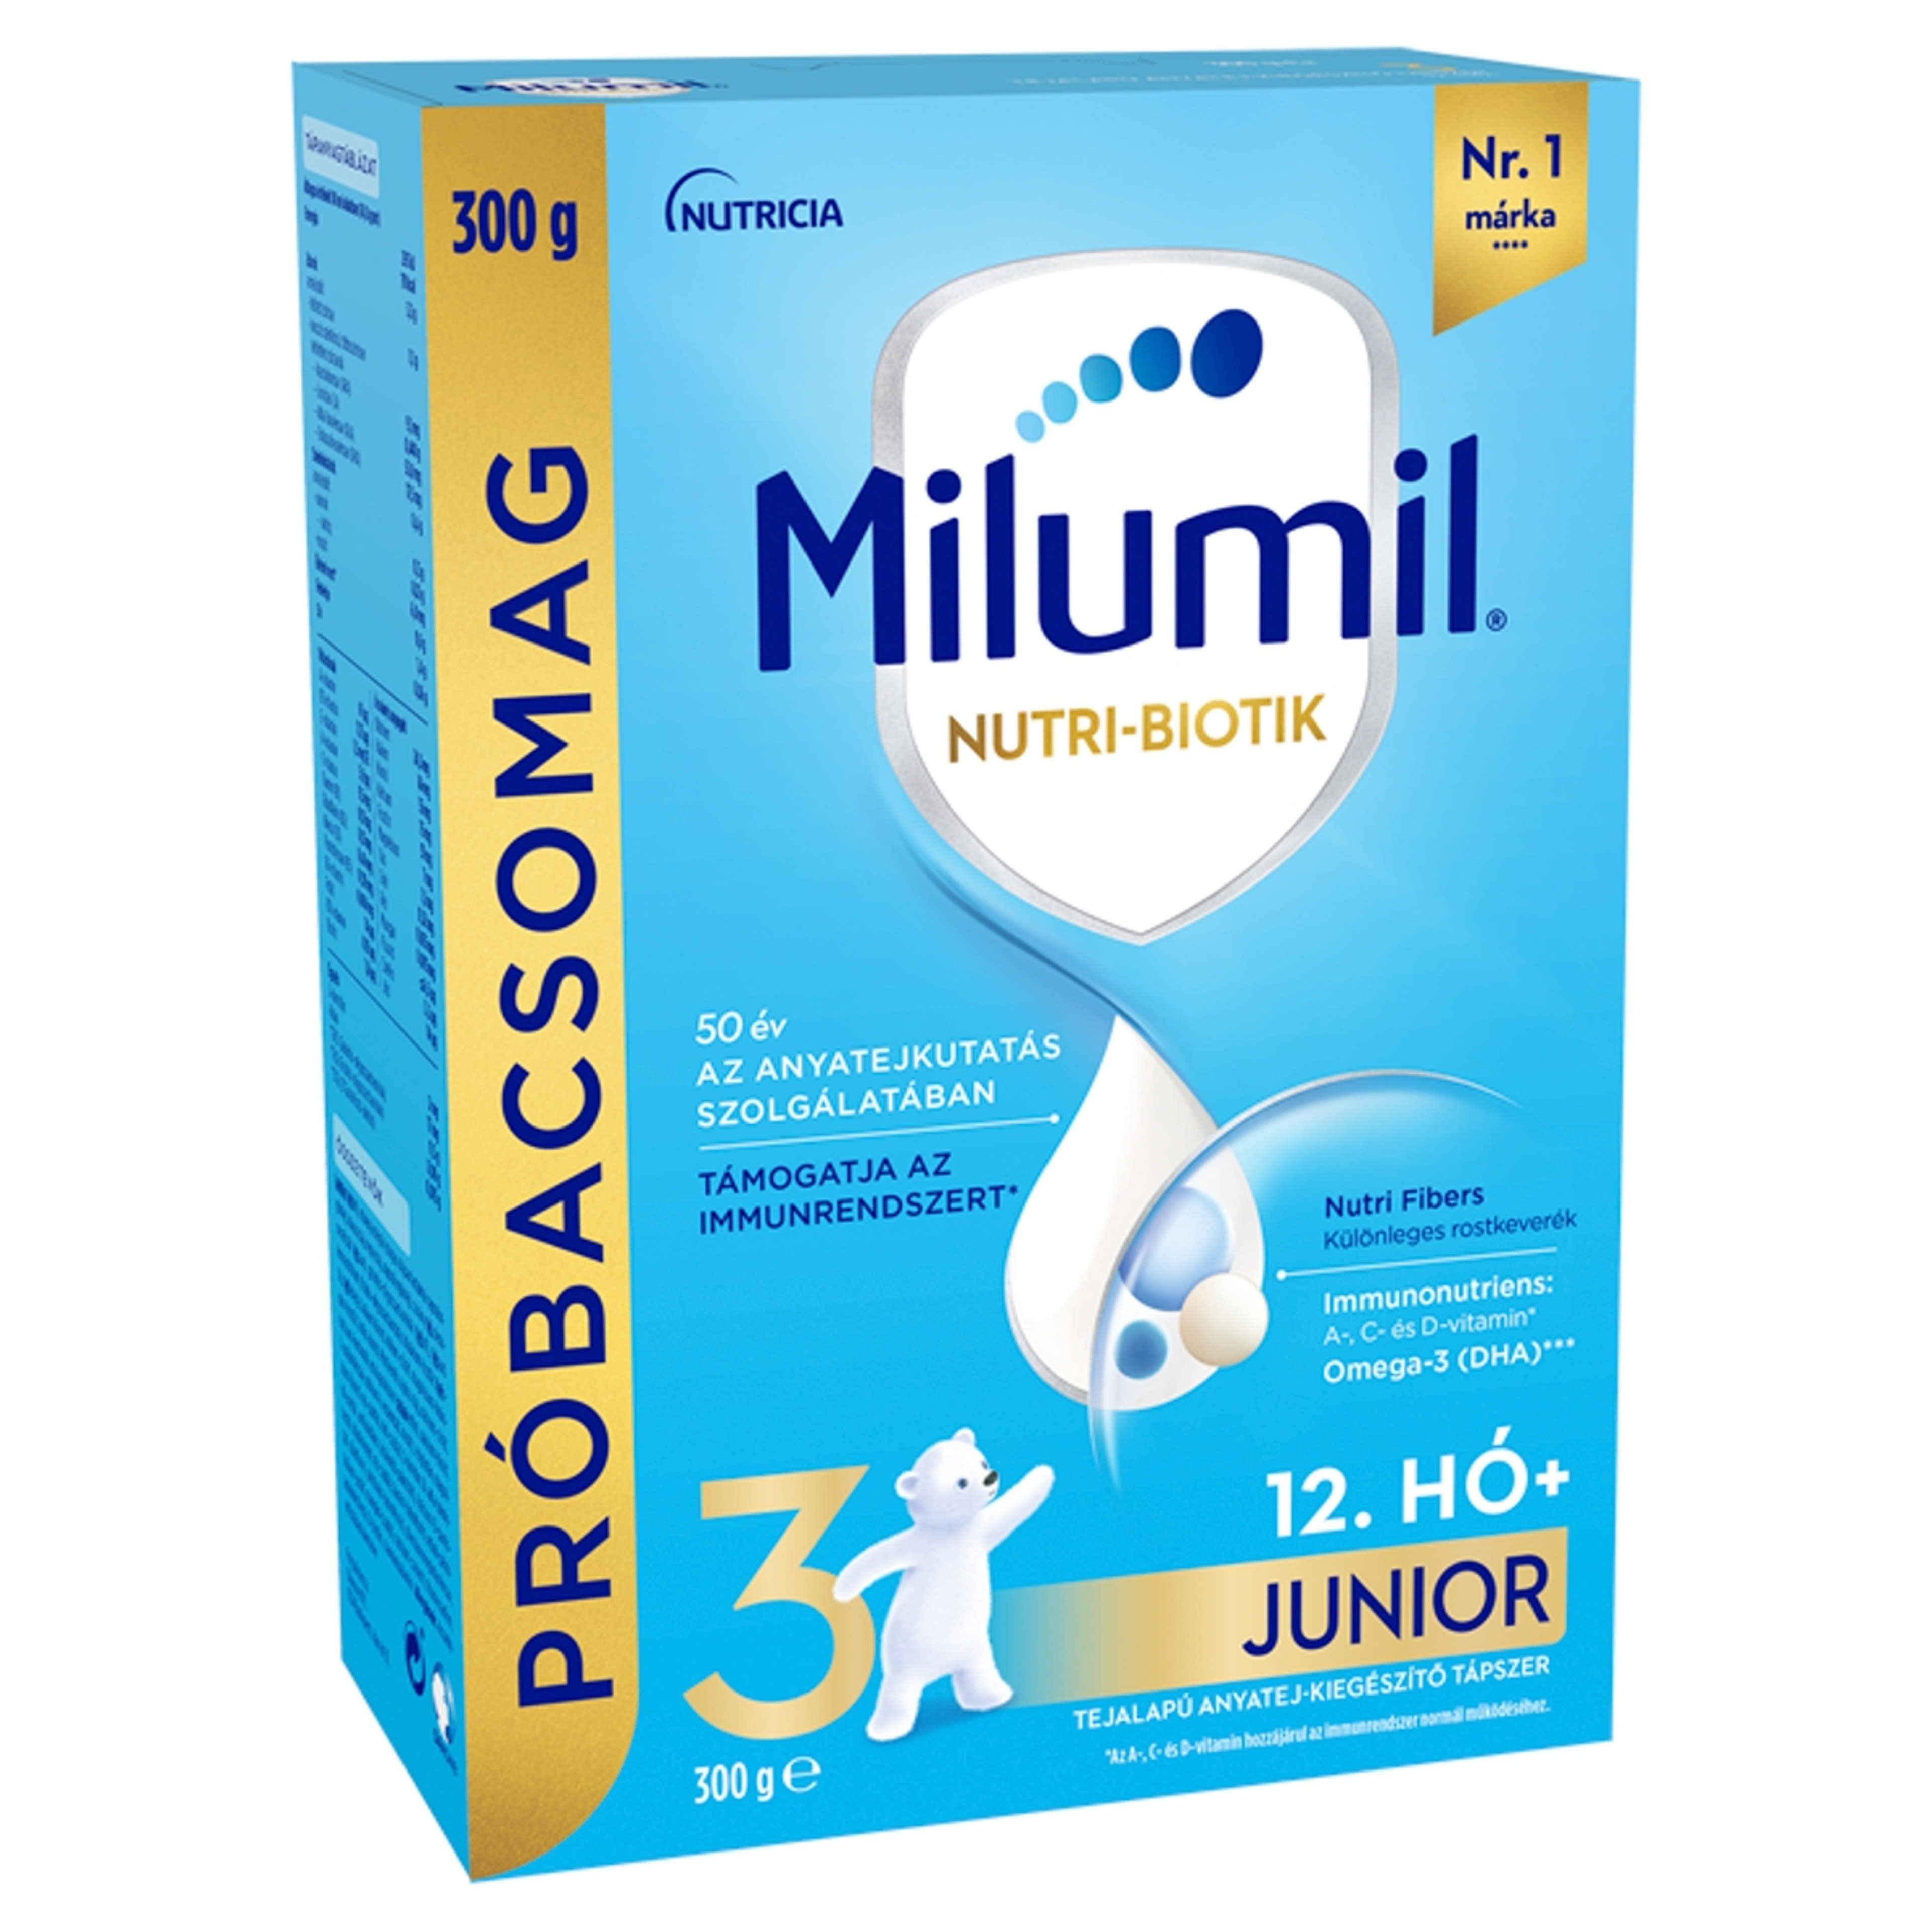 Milumil Nutri-Biotik 3 Junior tejalapú anyatej-kiegészítő tápszer 12.hónapos kortól - 300 g-1